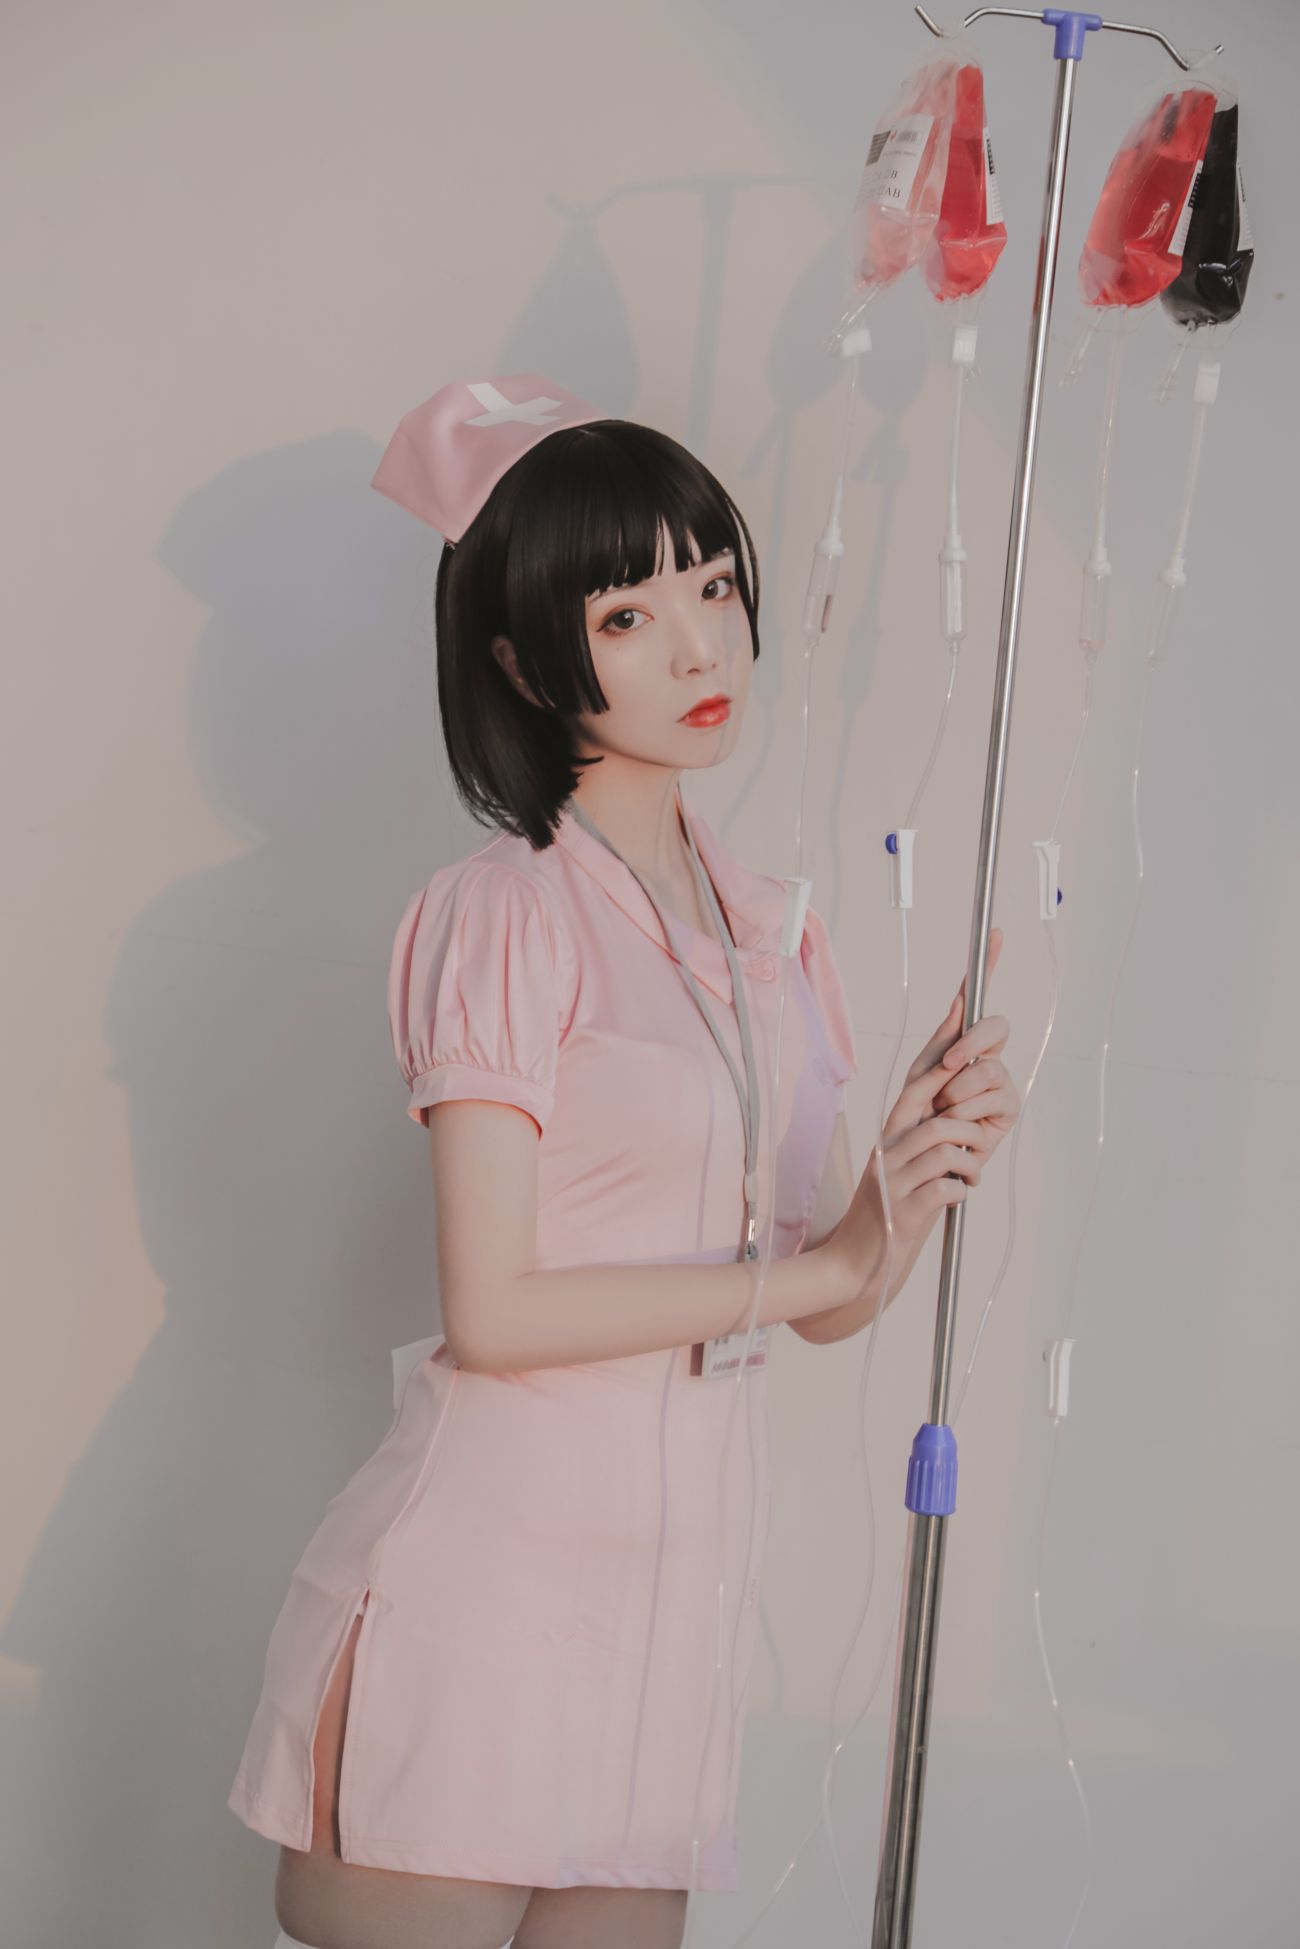 微博美少女Fushii海堂Cosplay性感写真护士 (32)